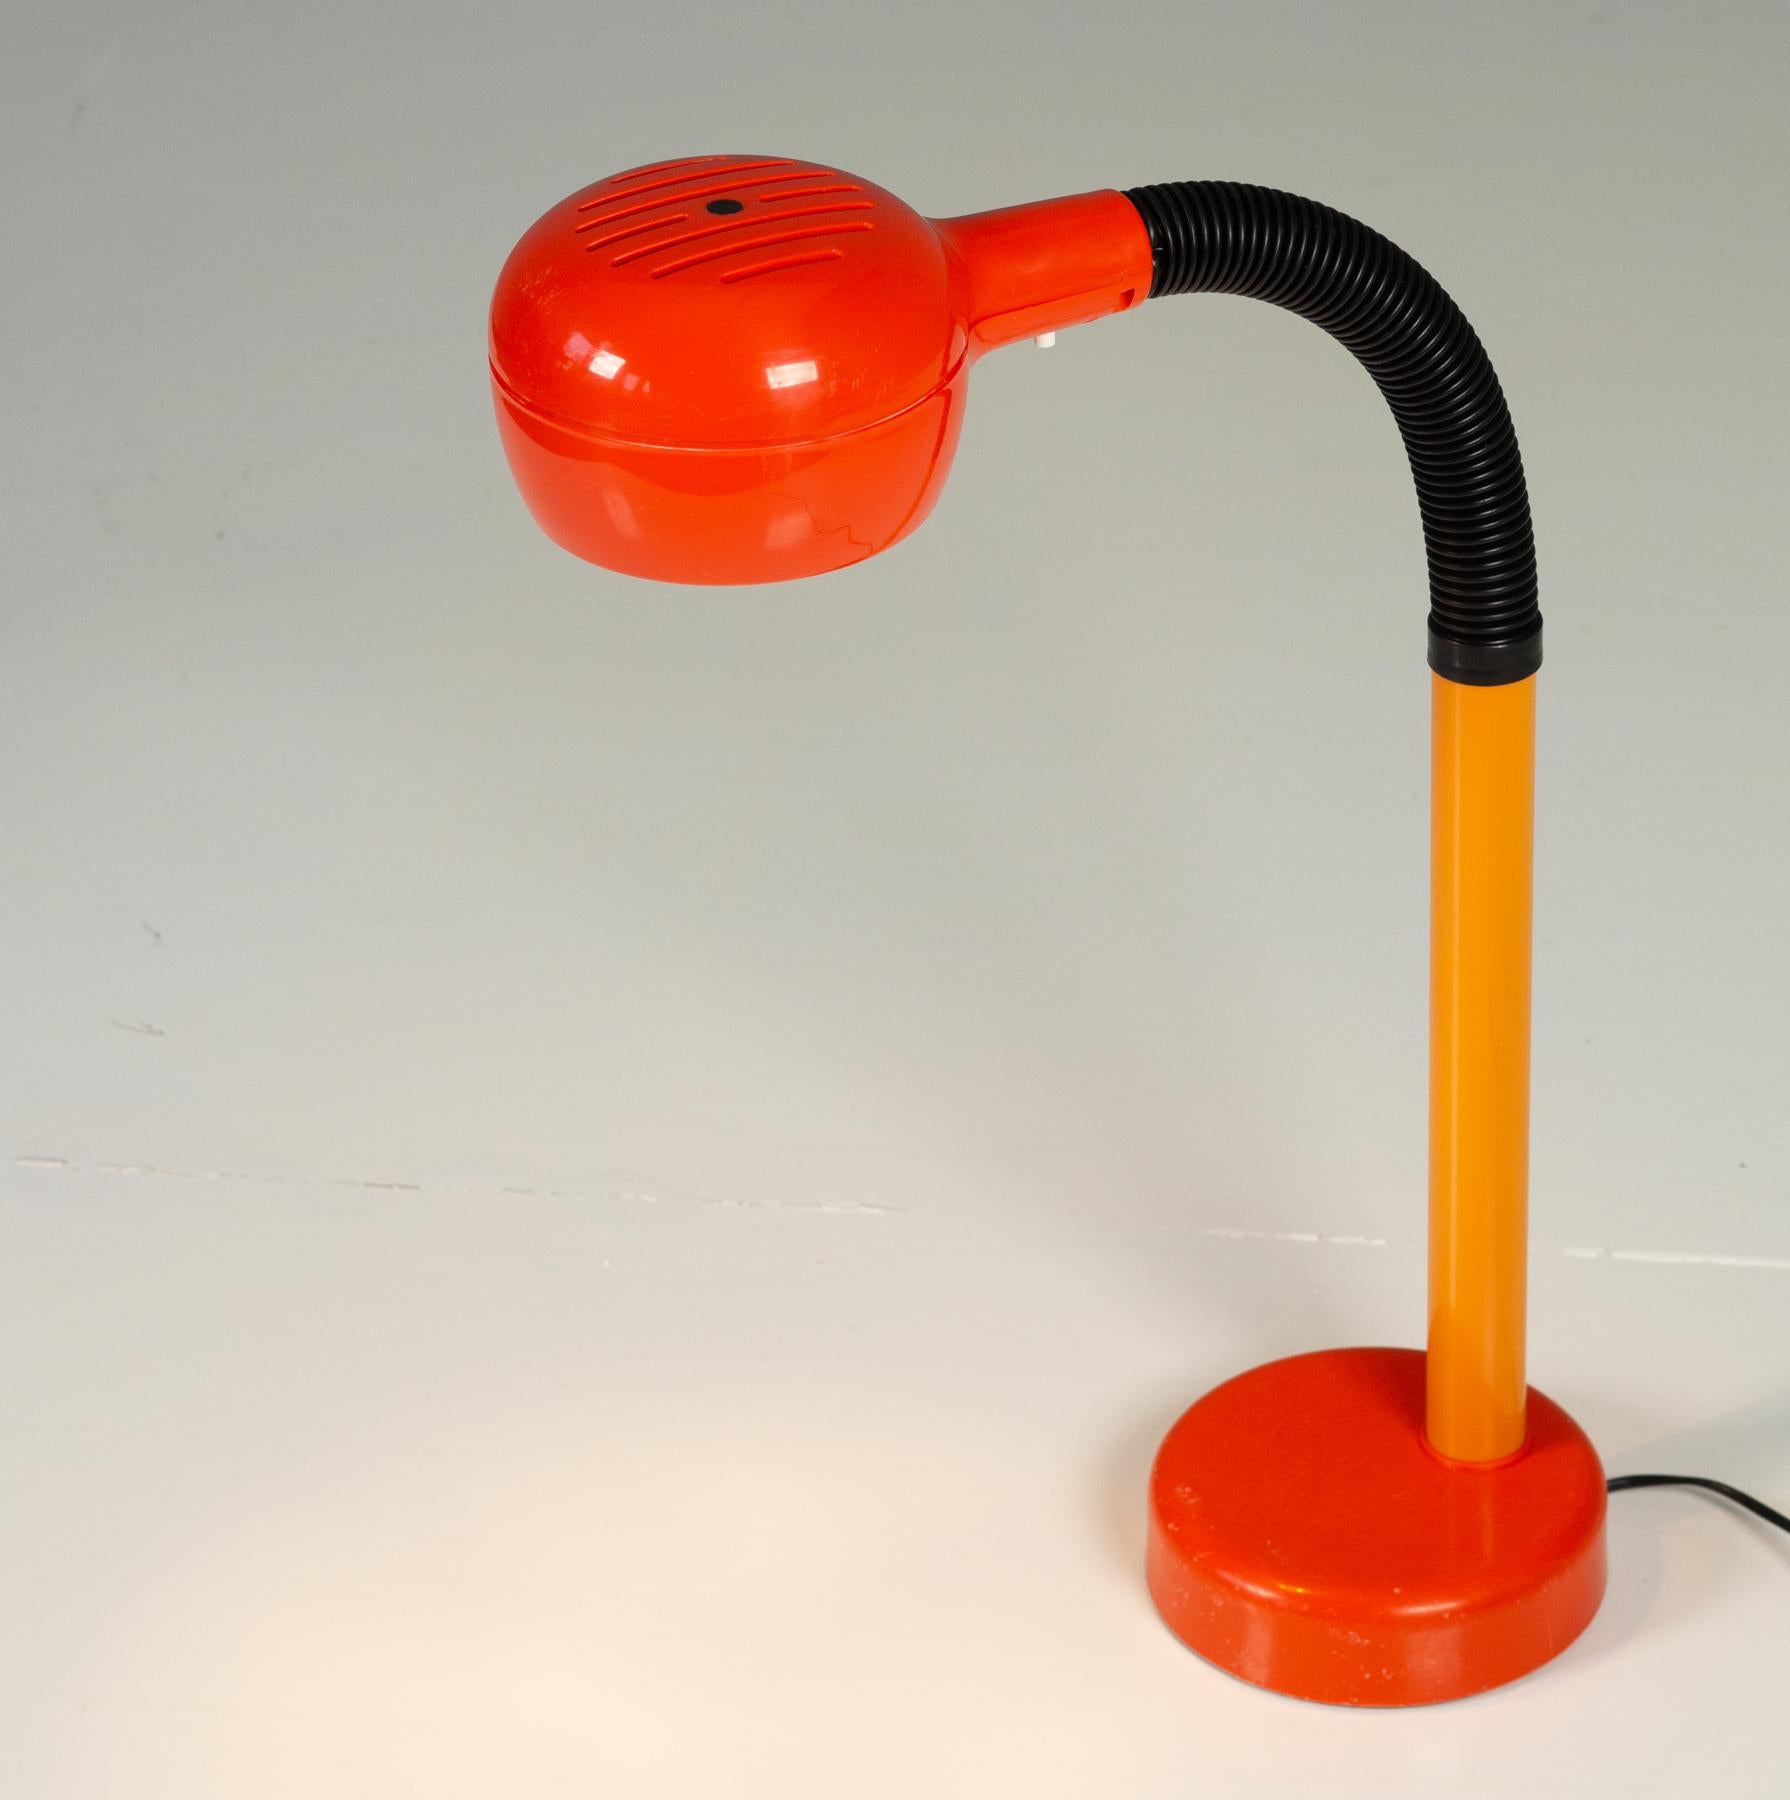 Fagerhult lampe de bureau Cobra 1975.

Ronde et équilibrée, avec une orange funky et vintage. Le col de cygne peut être placé dans n'importe quelle position. Cette conception a remporté le prestigieux prix IF Design en 1975. Le pied de la lampe